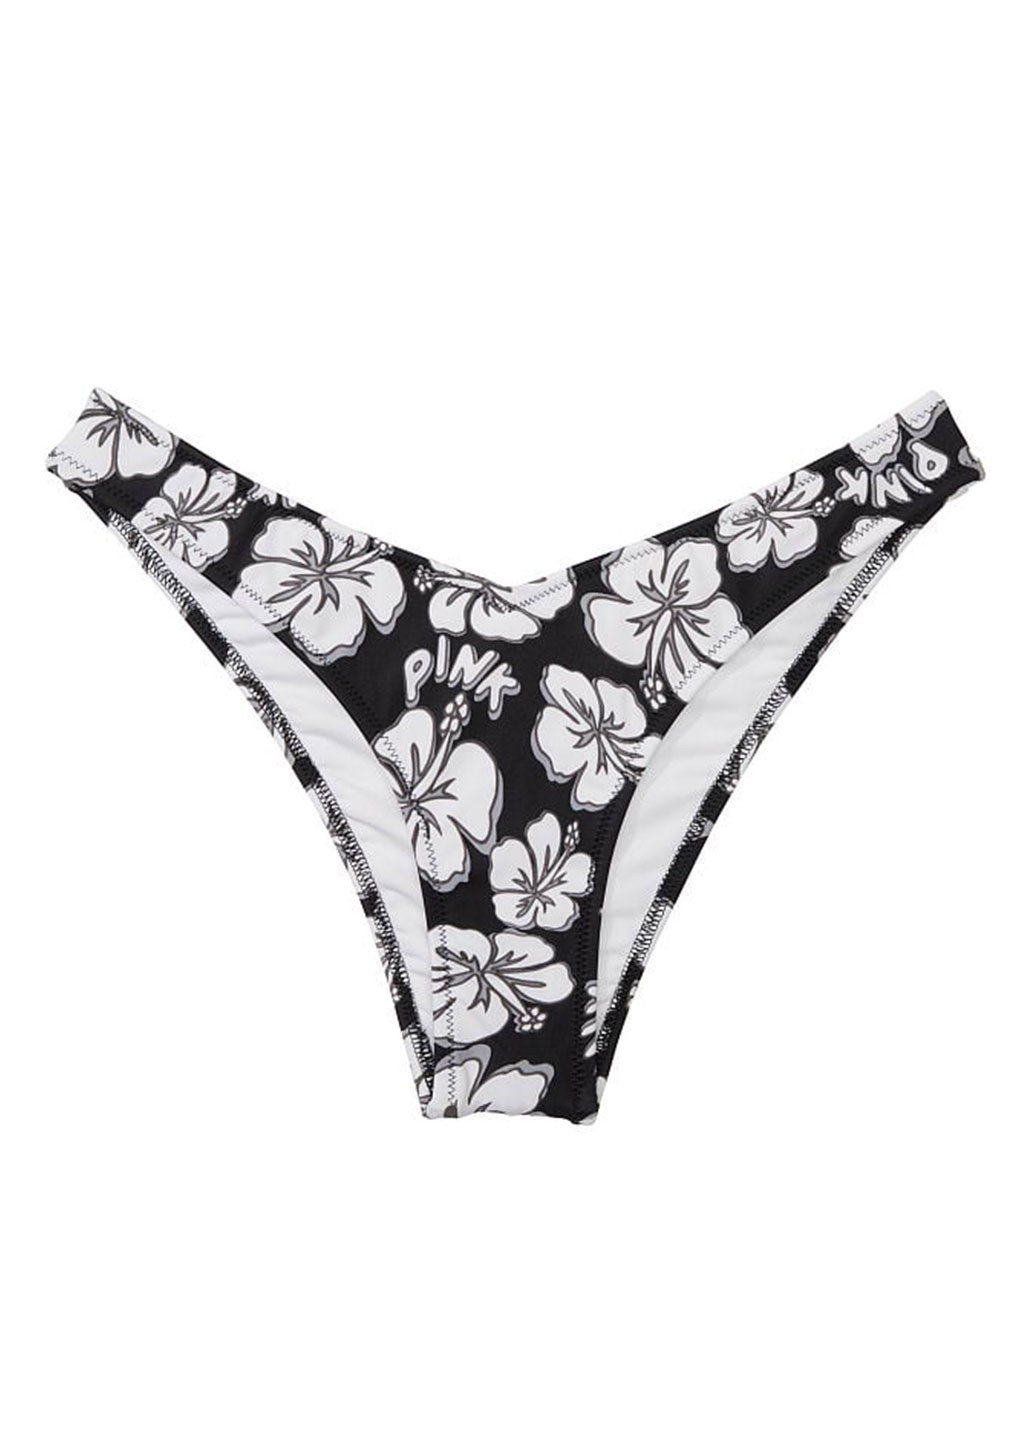 Чорно-білий демісезонний купальник (ліф, трусики) роздільний, халтер Victoria's Secret